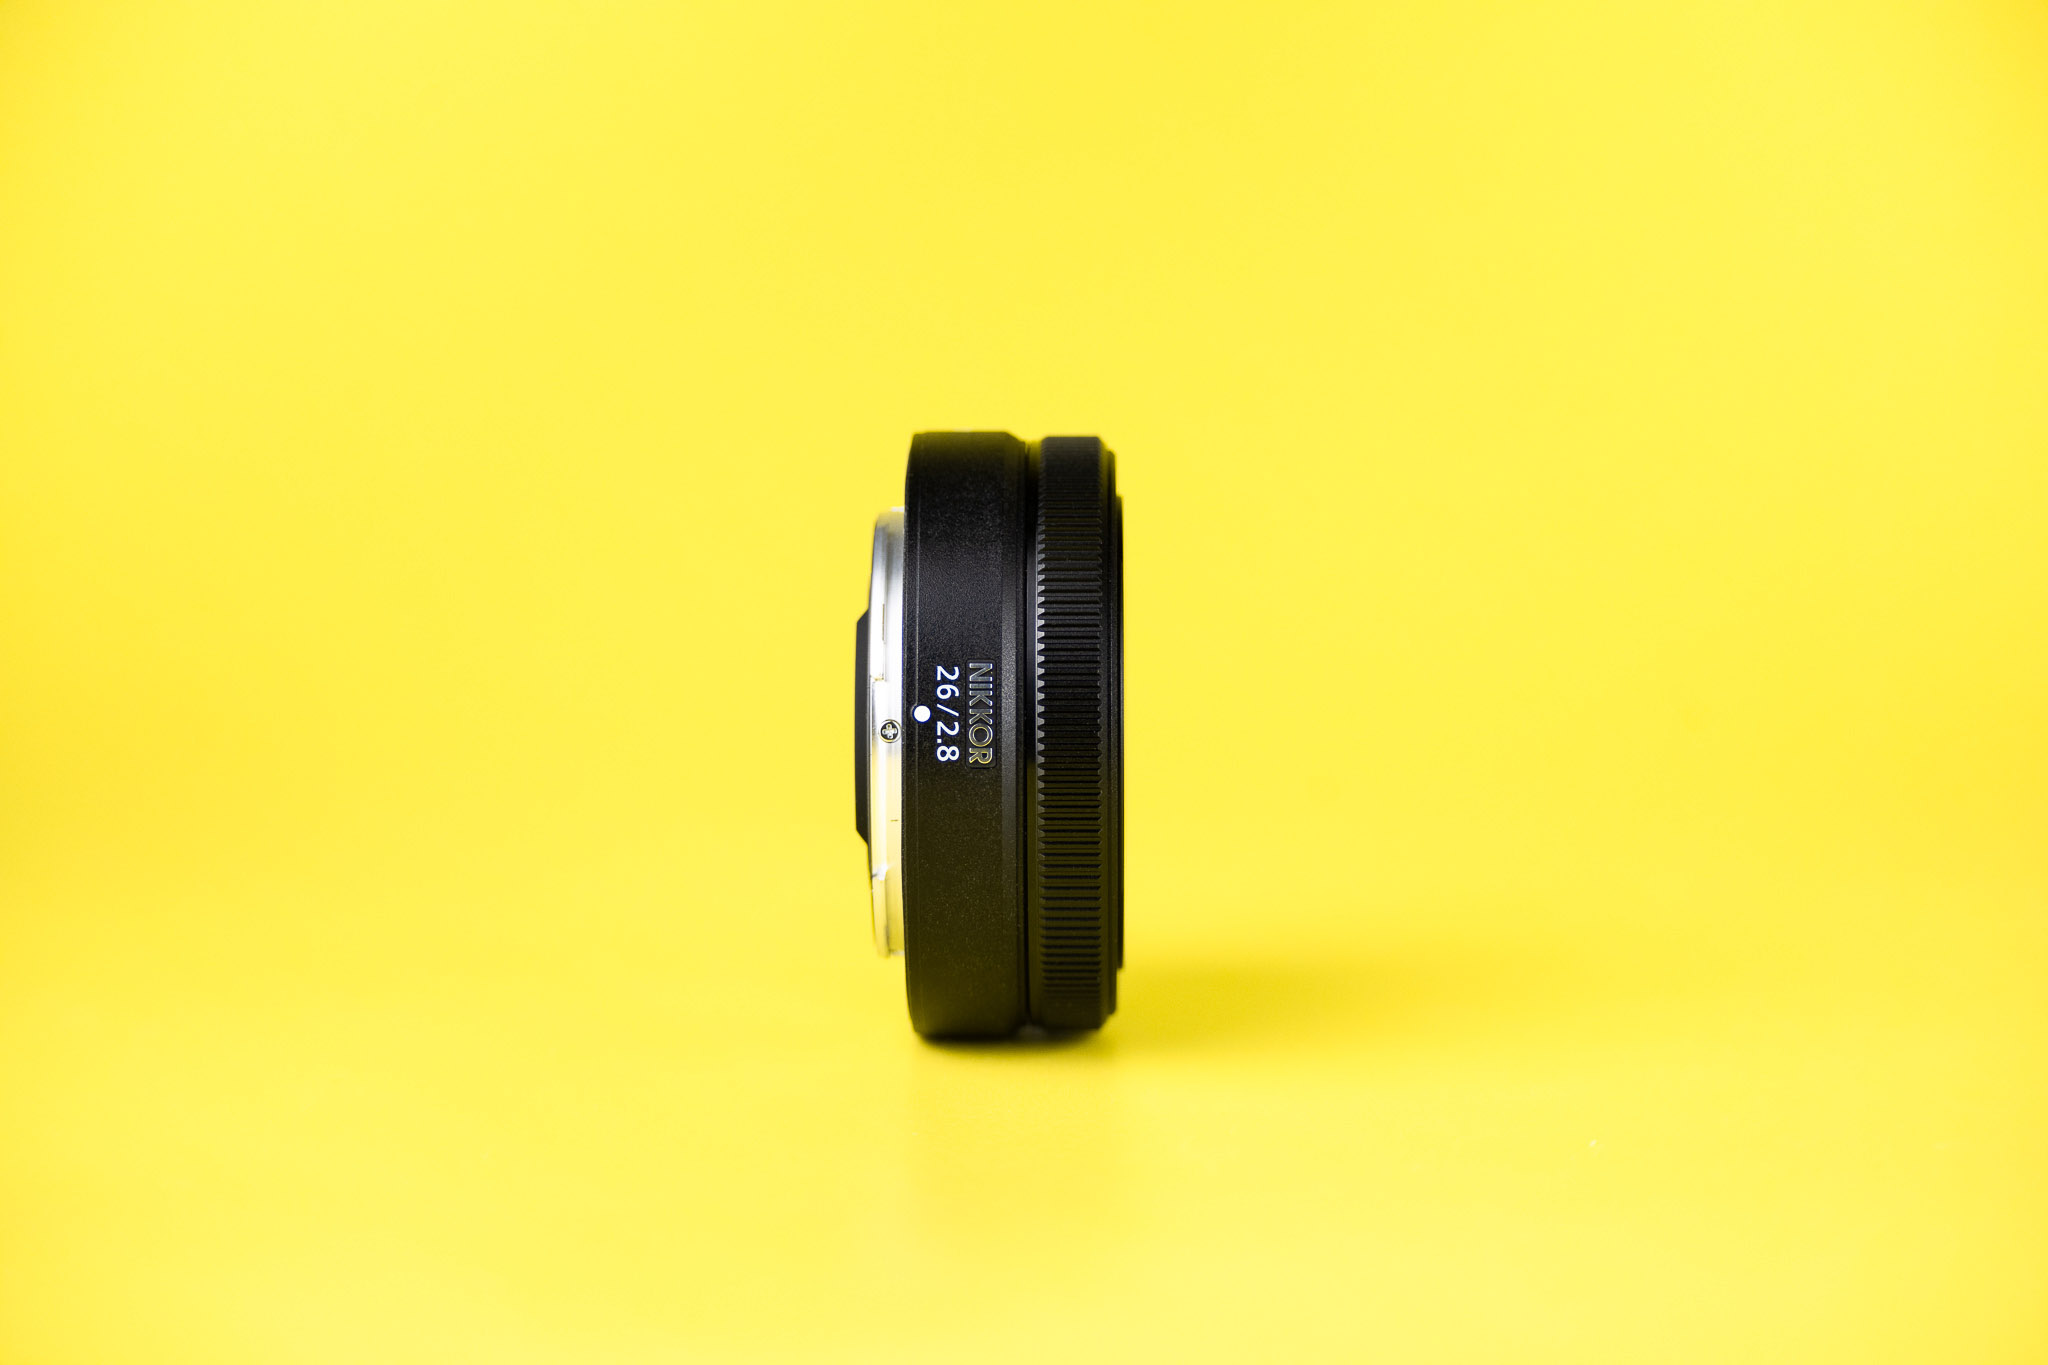 Lente NIKKOR Z 26 mm f/2.8  lente ultra compacto con gran angular